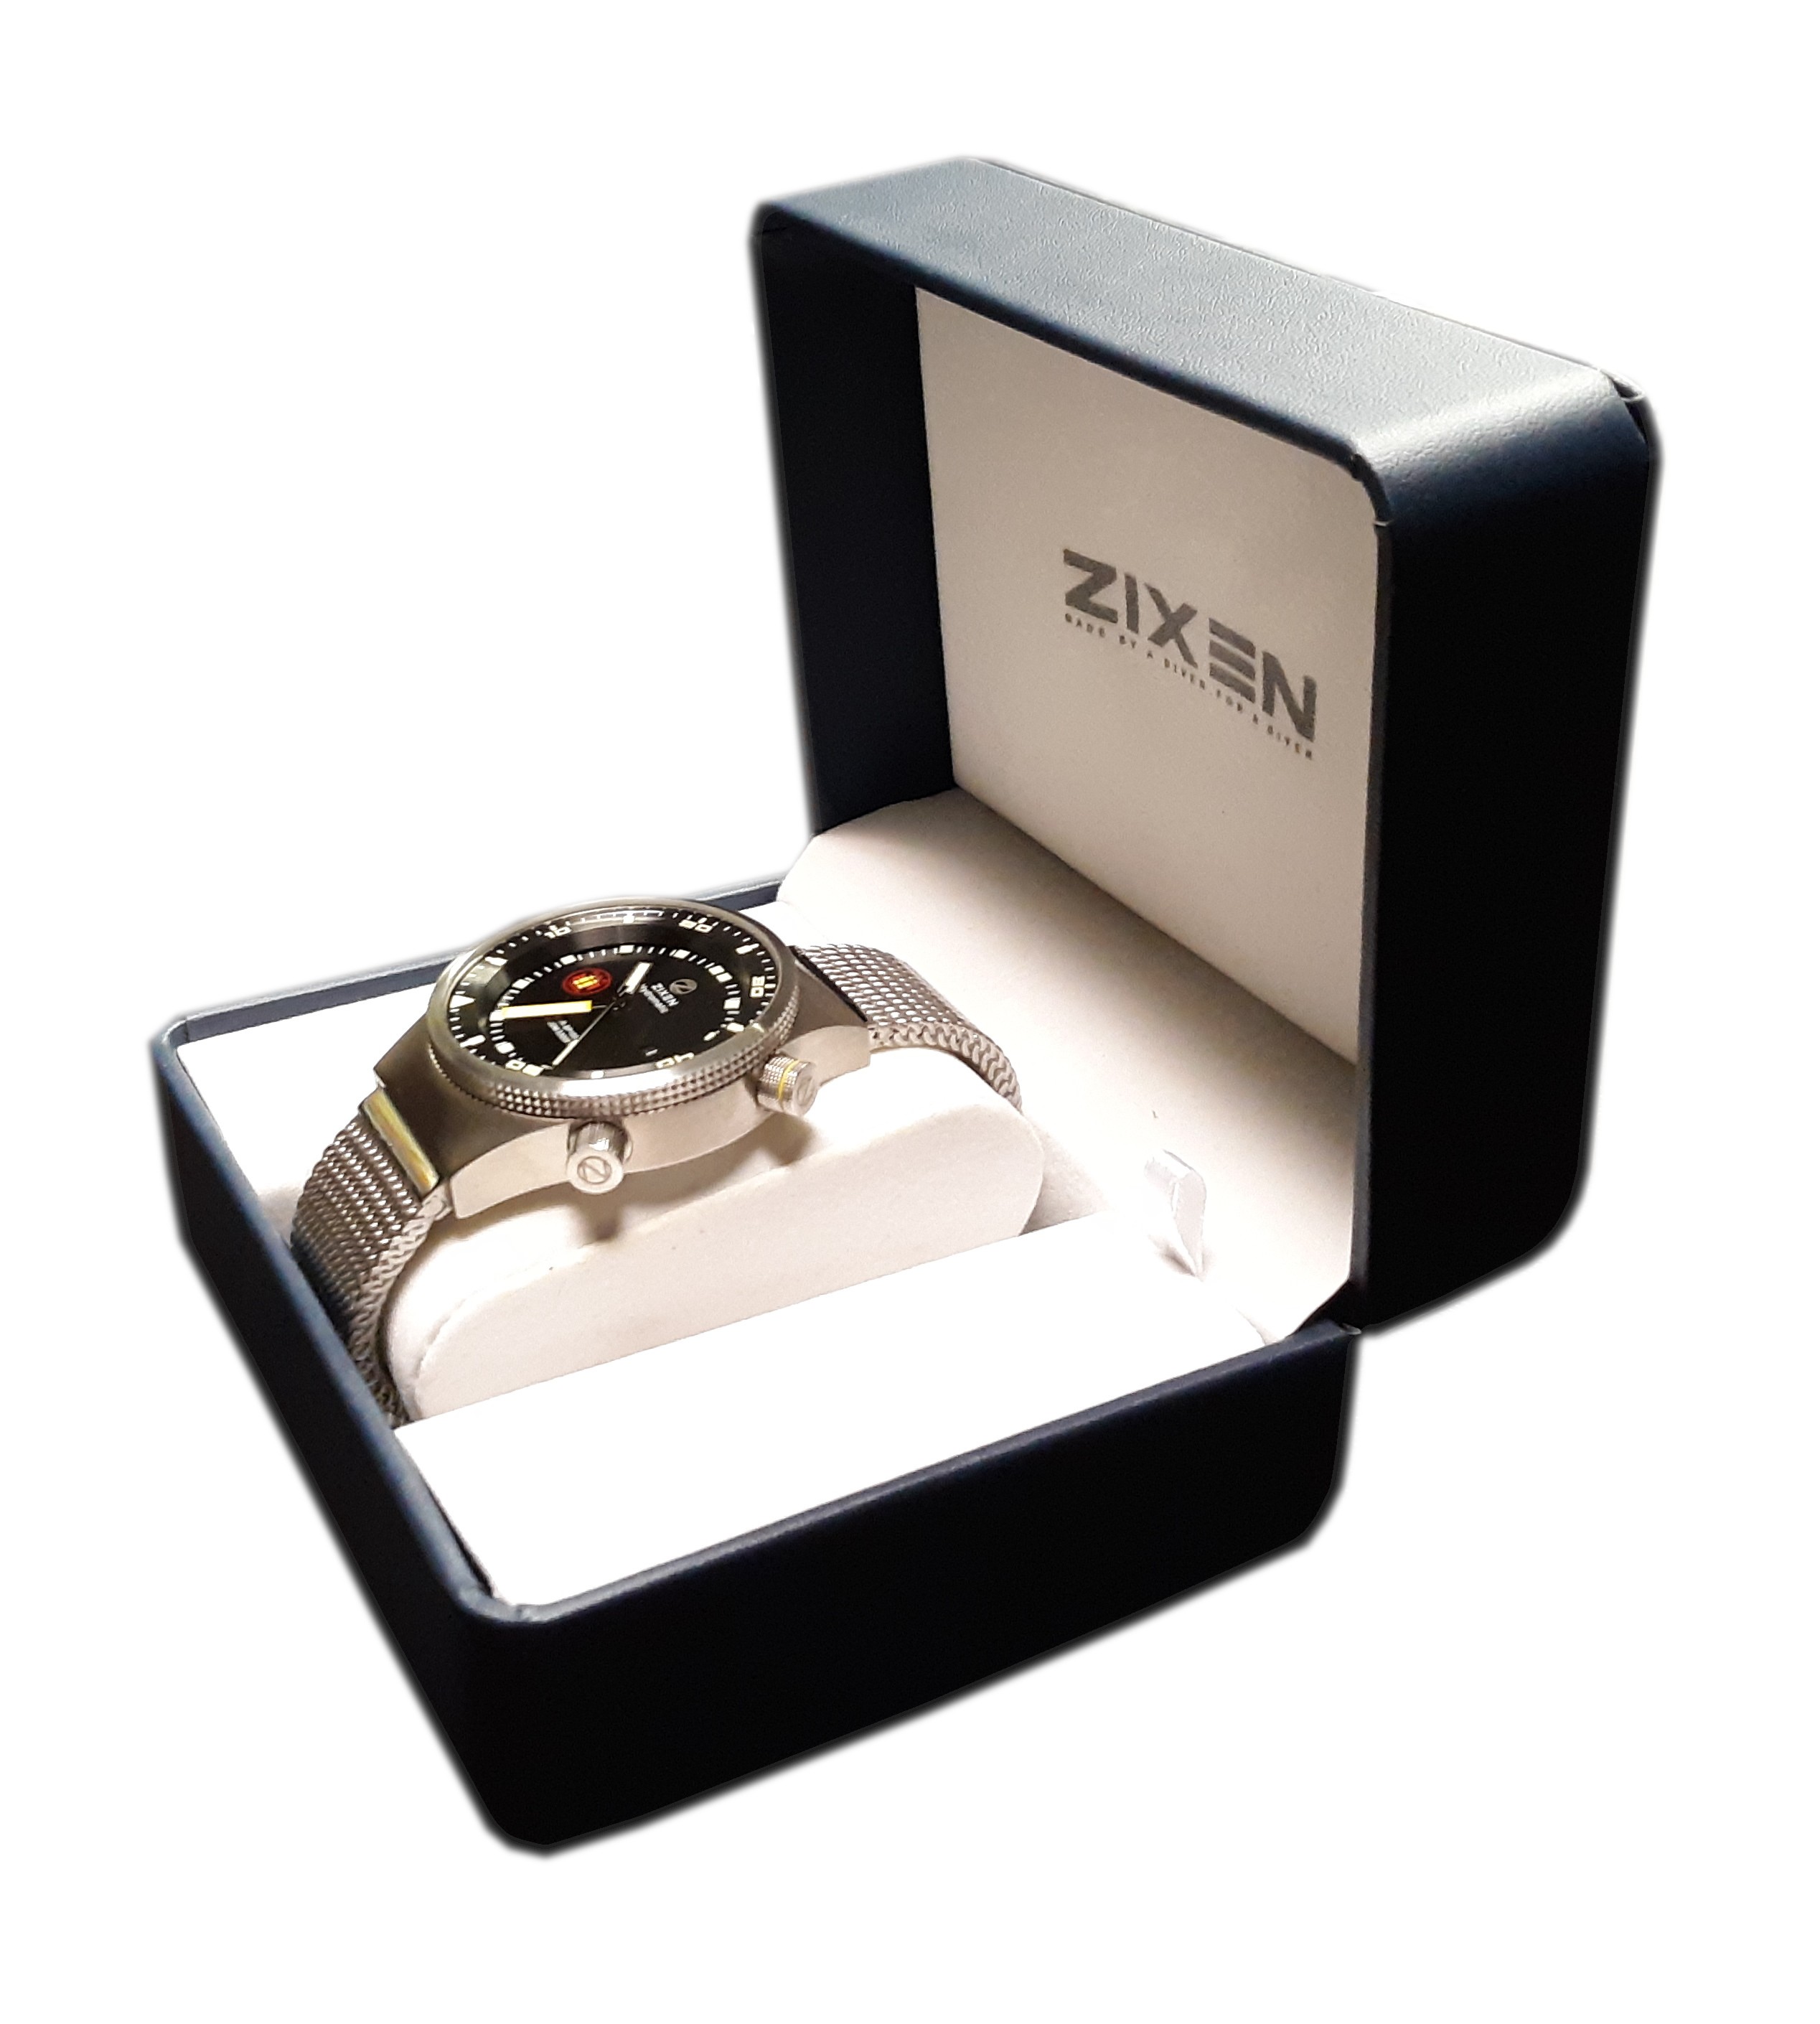 Zixen Hydromatic Automatic Diver Men's Watch Black Dial 46mm DSR-SP1000M